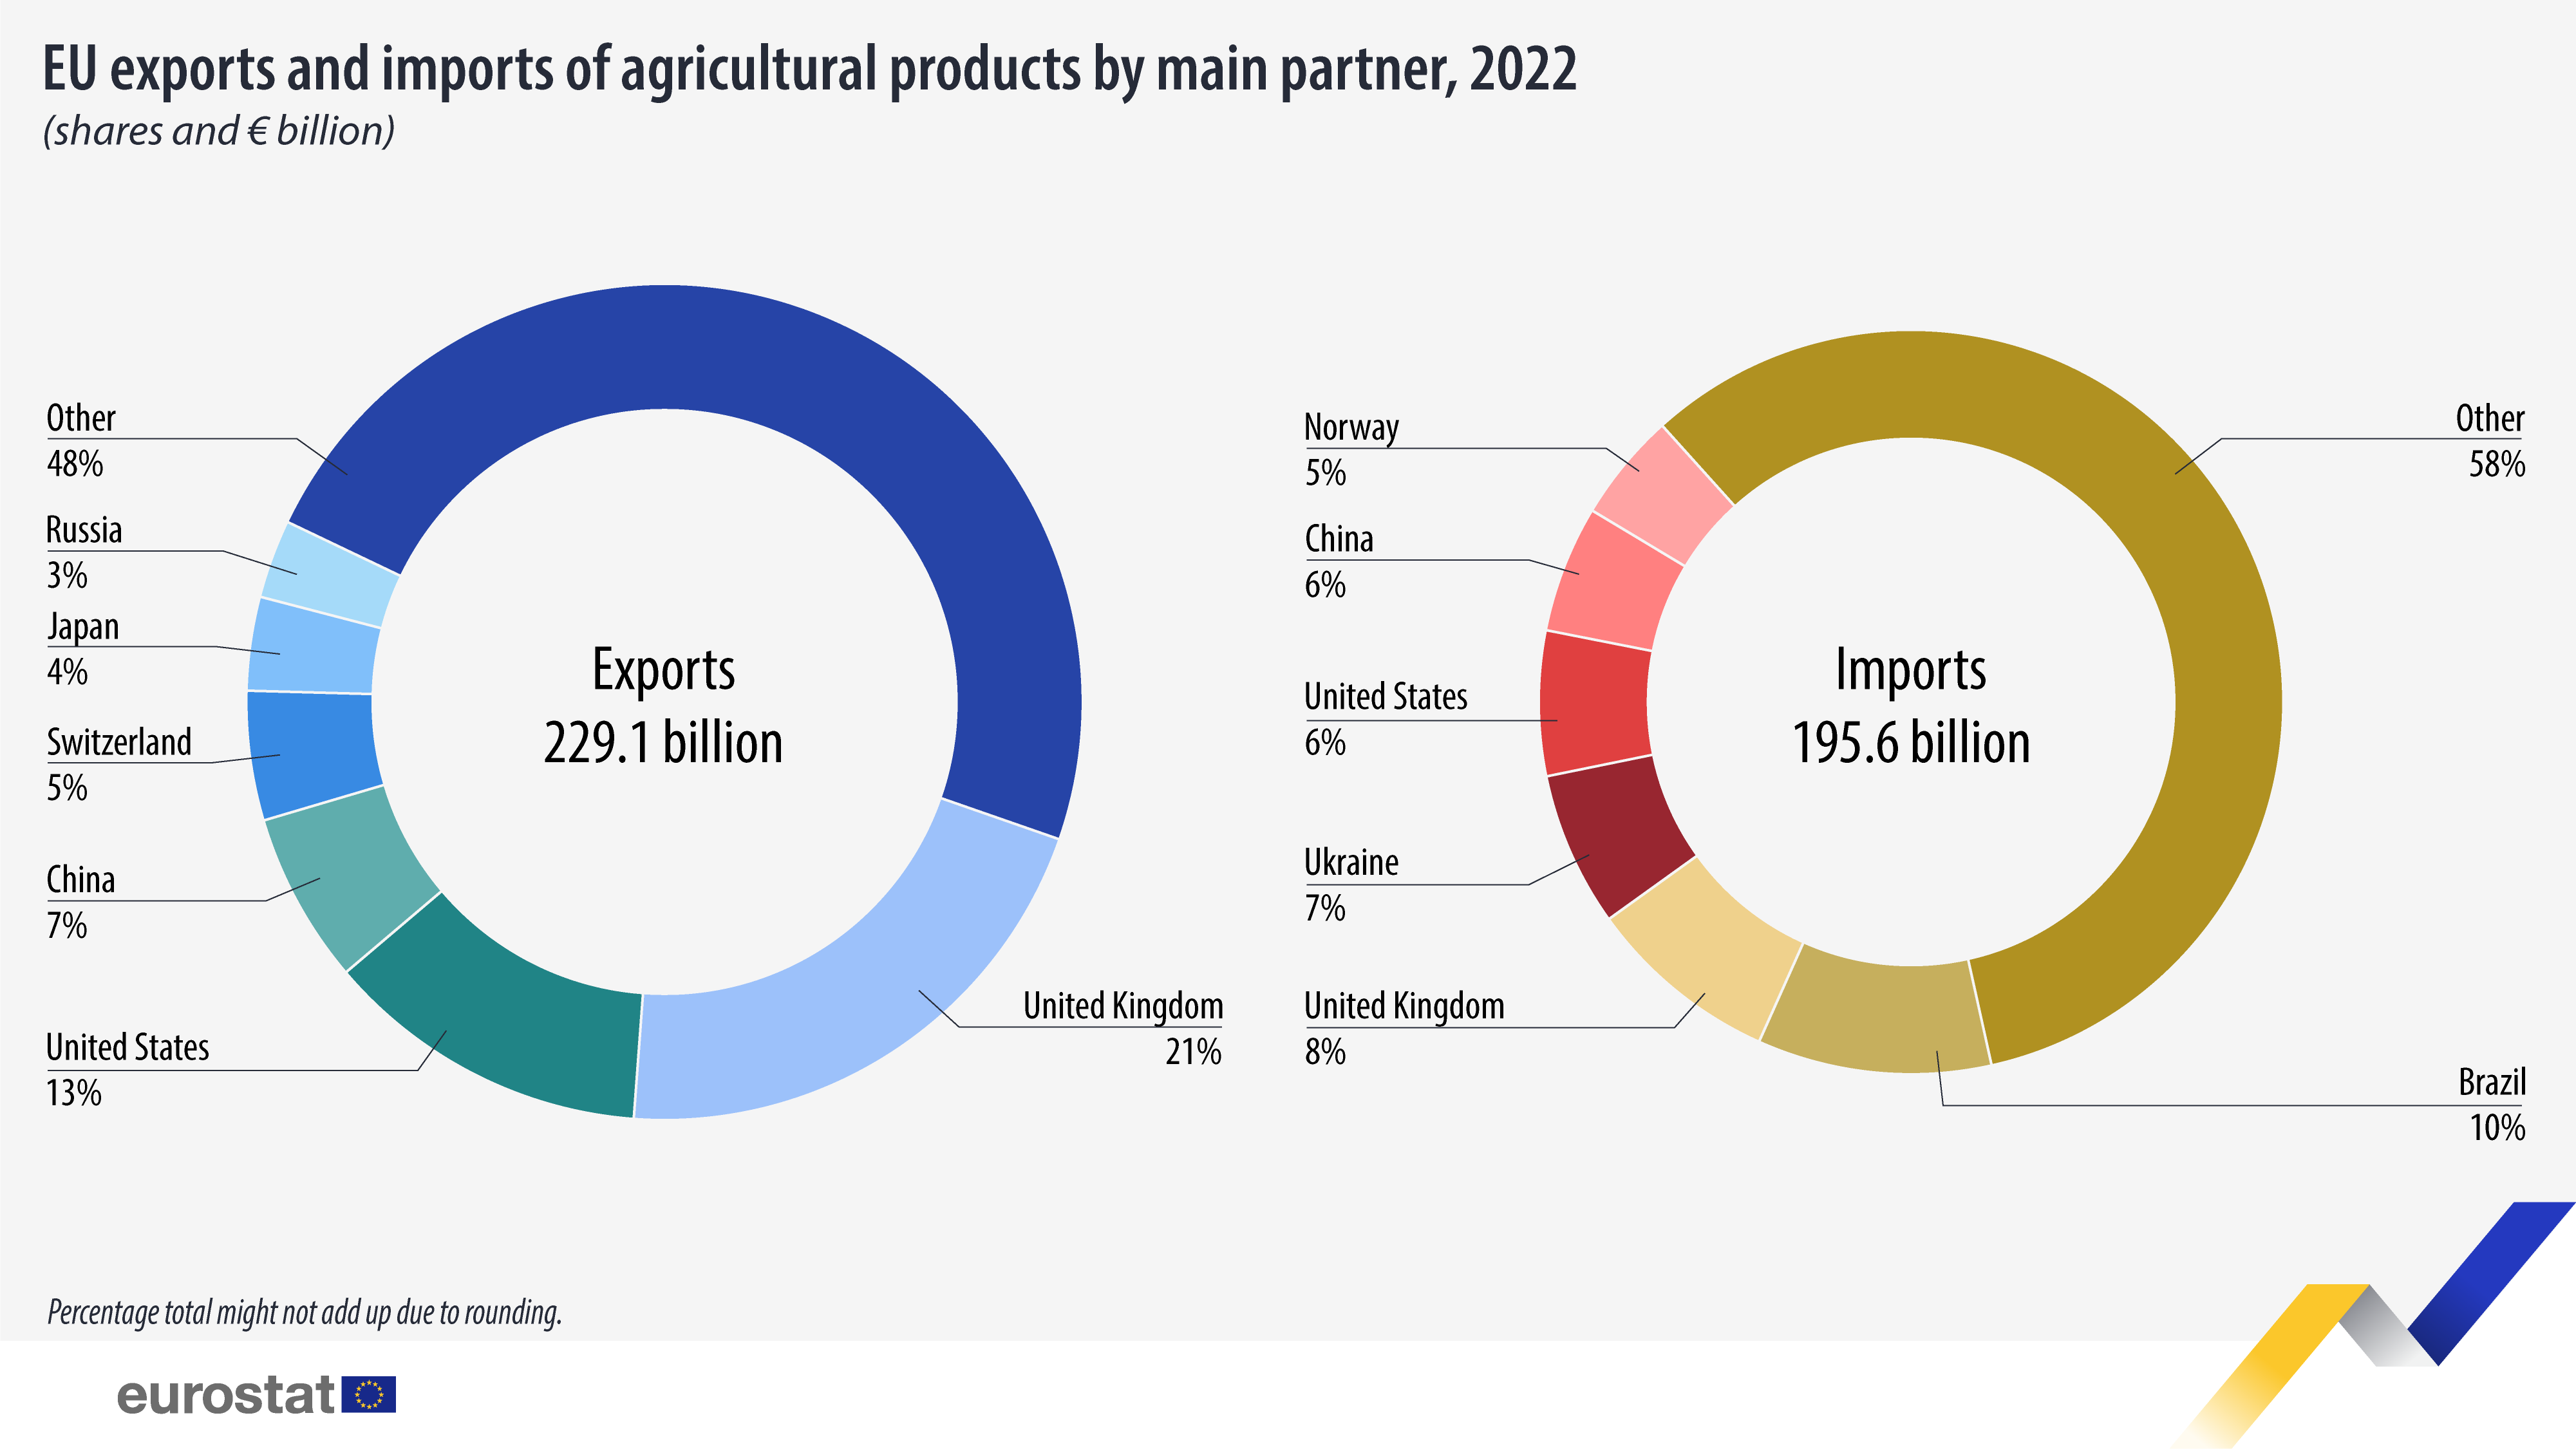 Infographic: εξαγωγές και εισαγωγές αγροτικών προϊόντων της ΕΕ ανά κύριο εταίρο, μετοχές και δισεκατομμύρια ευρώ, 2022